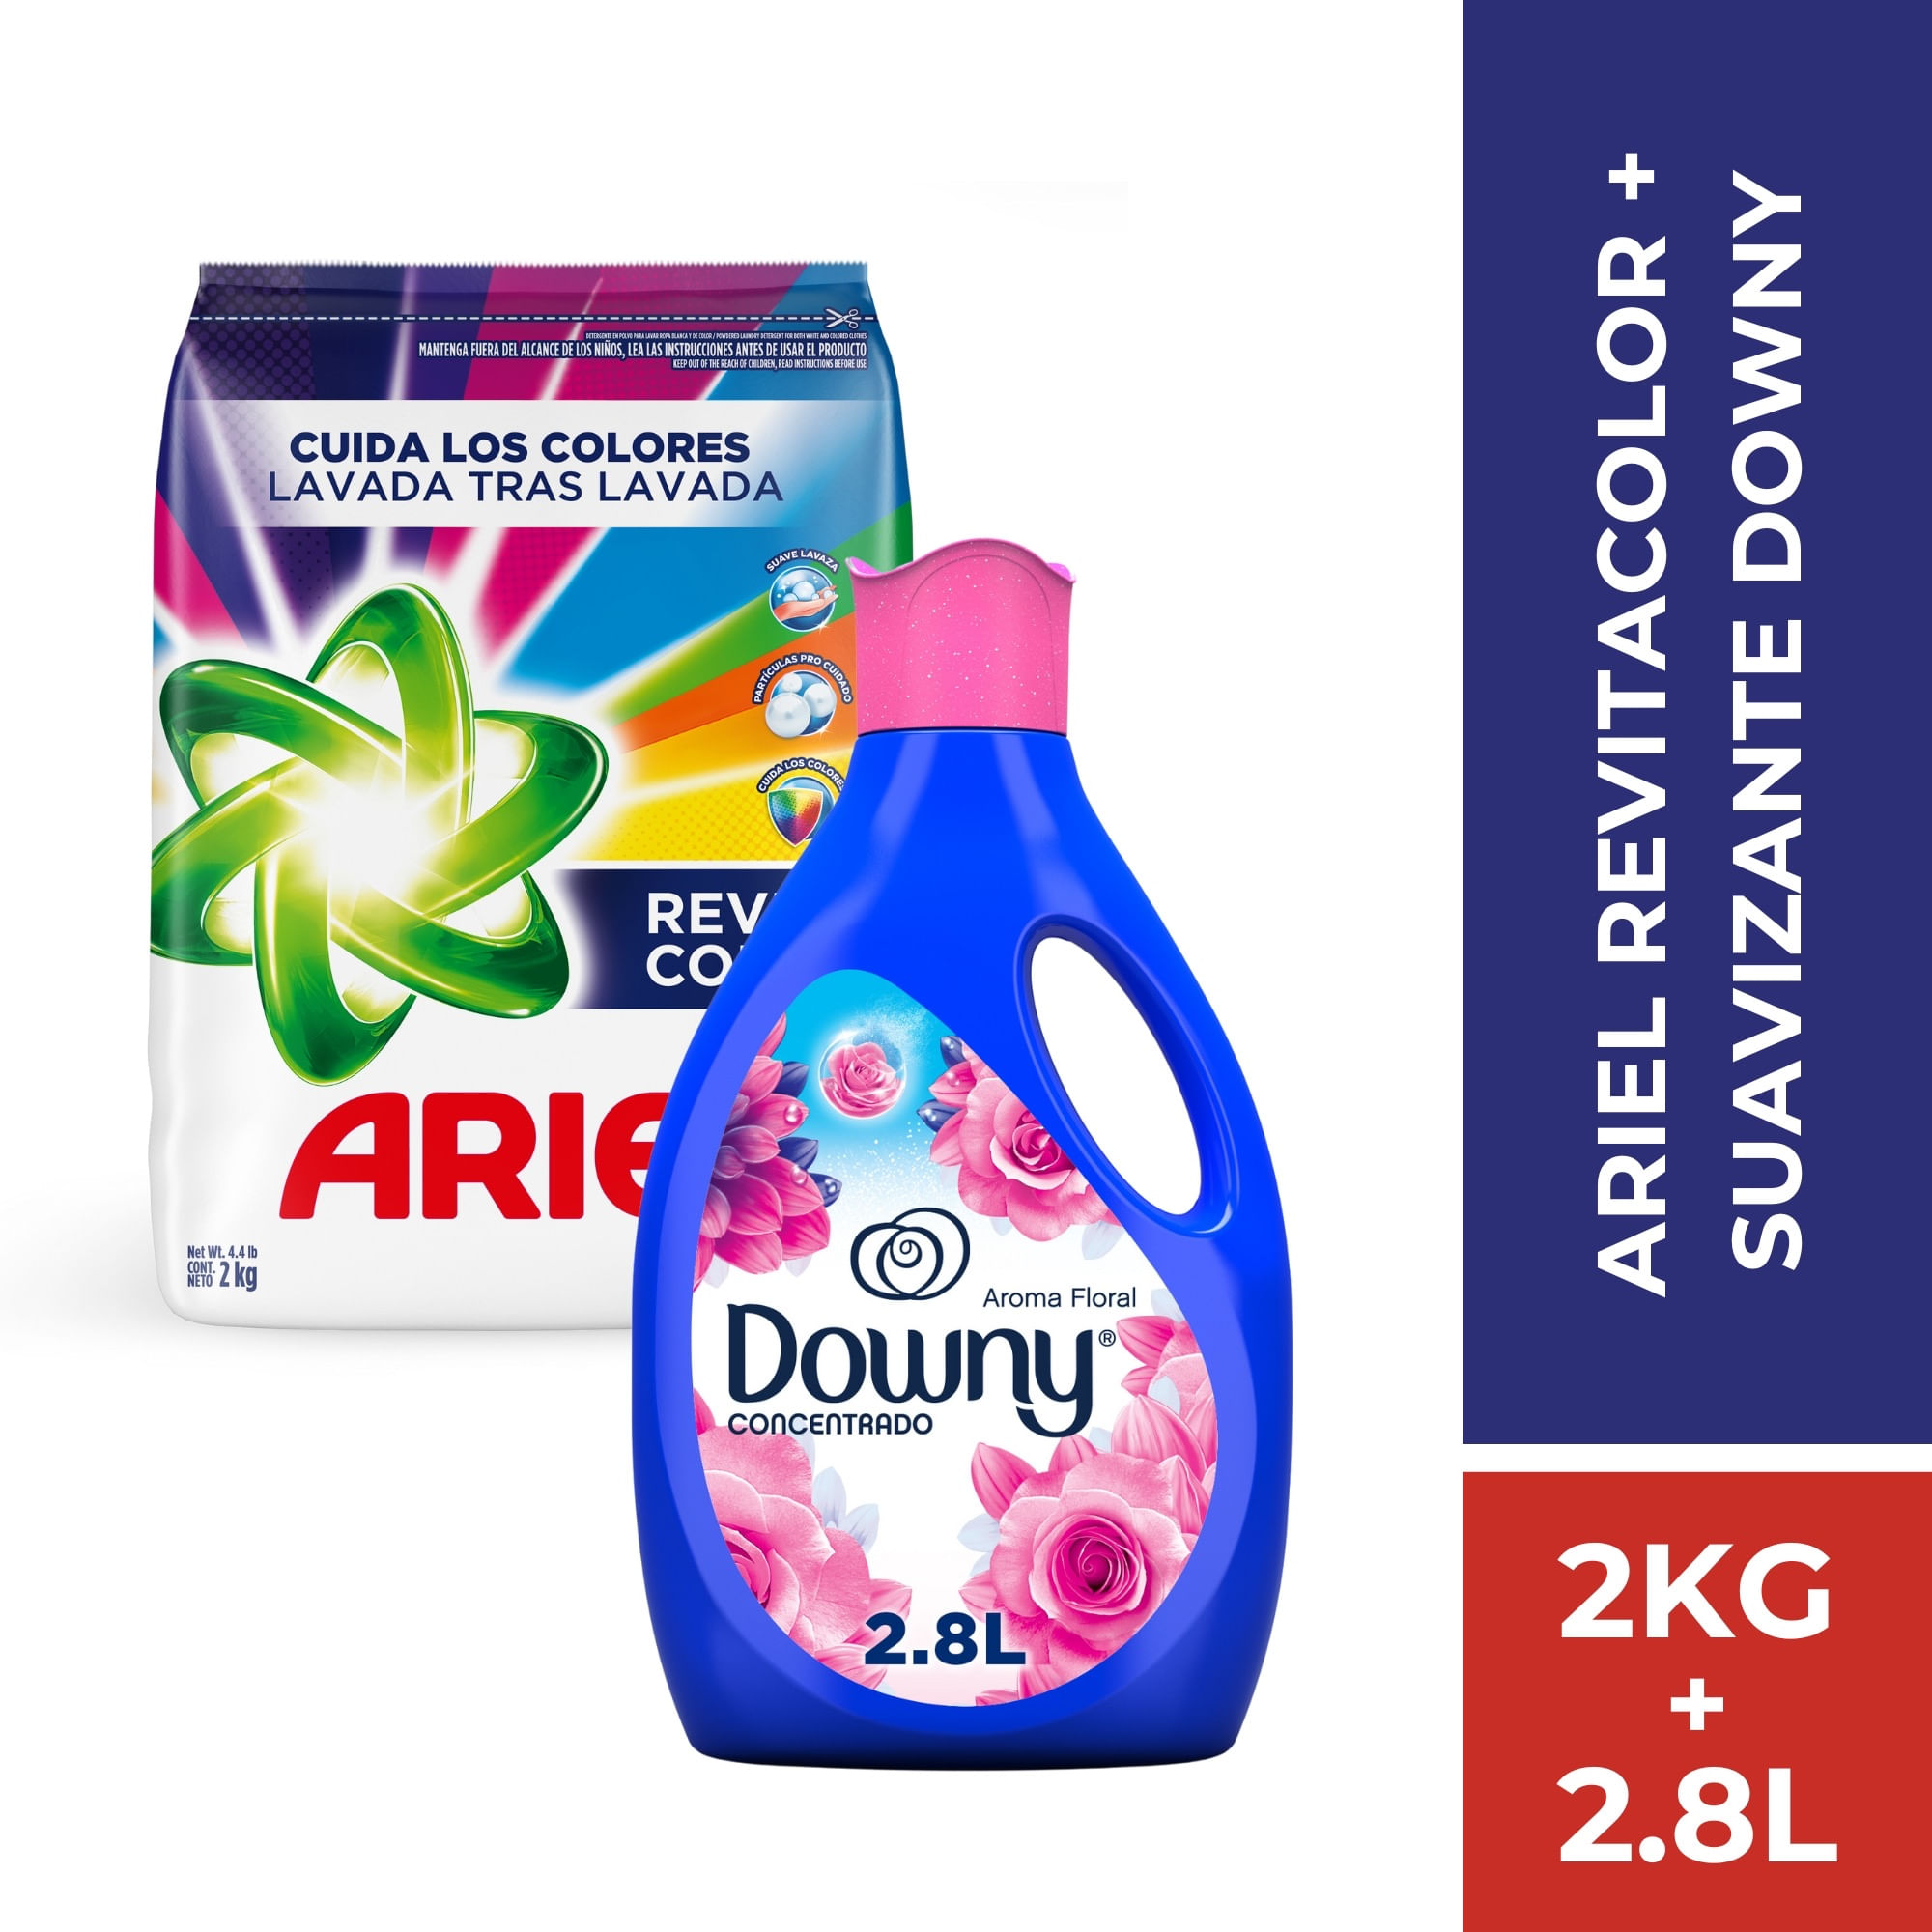 Pack Detergente Ariel Revitacolor 2 kg + Suavizante Downy Floral 2.8 L